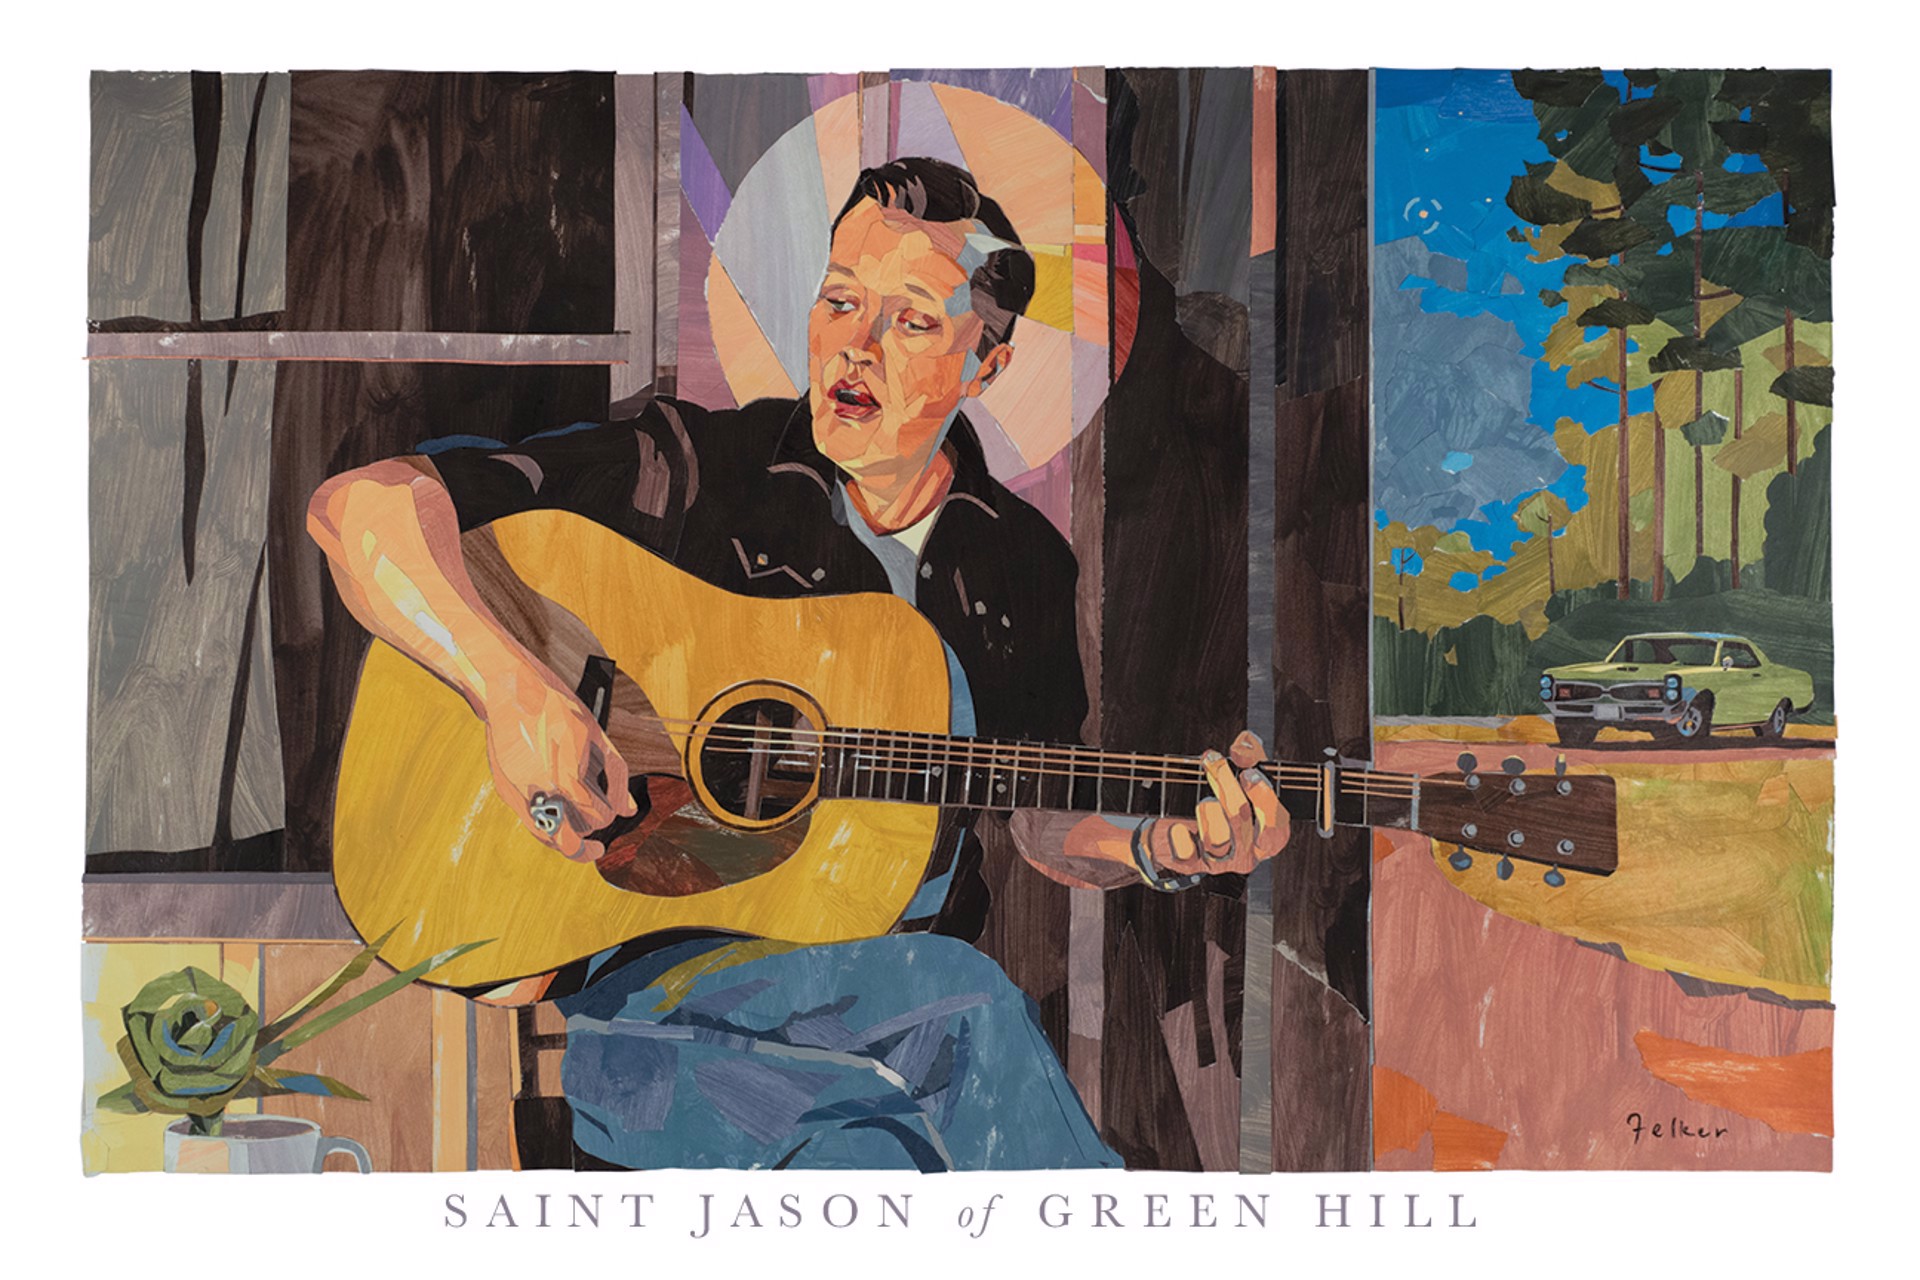 St. Jason of Green Hill by Robert Felker